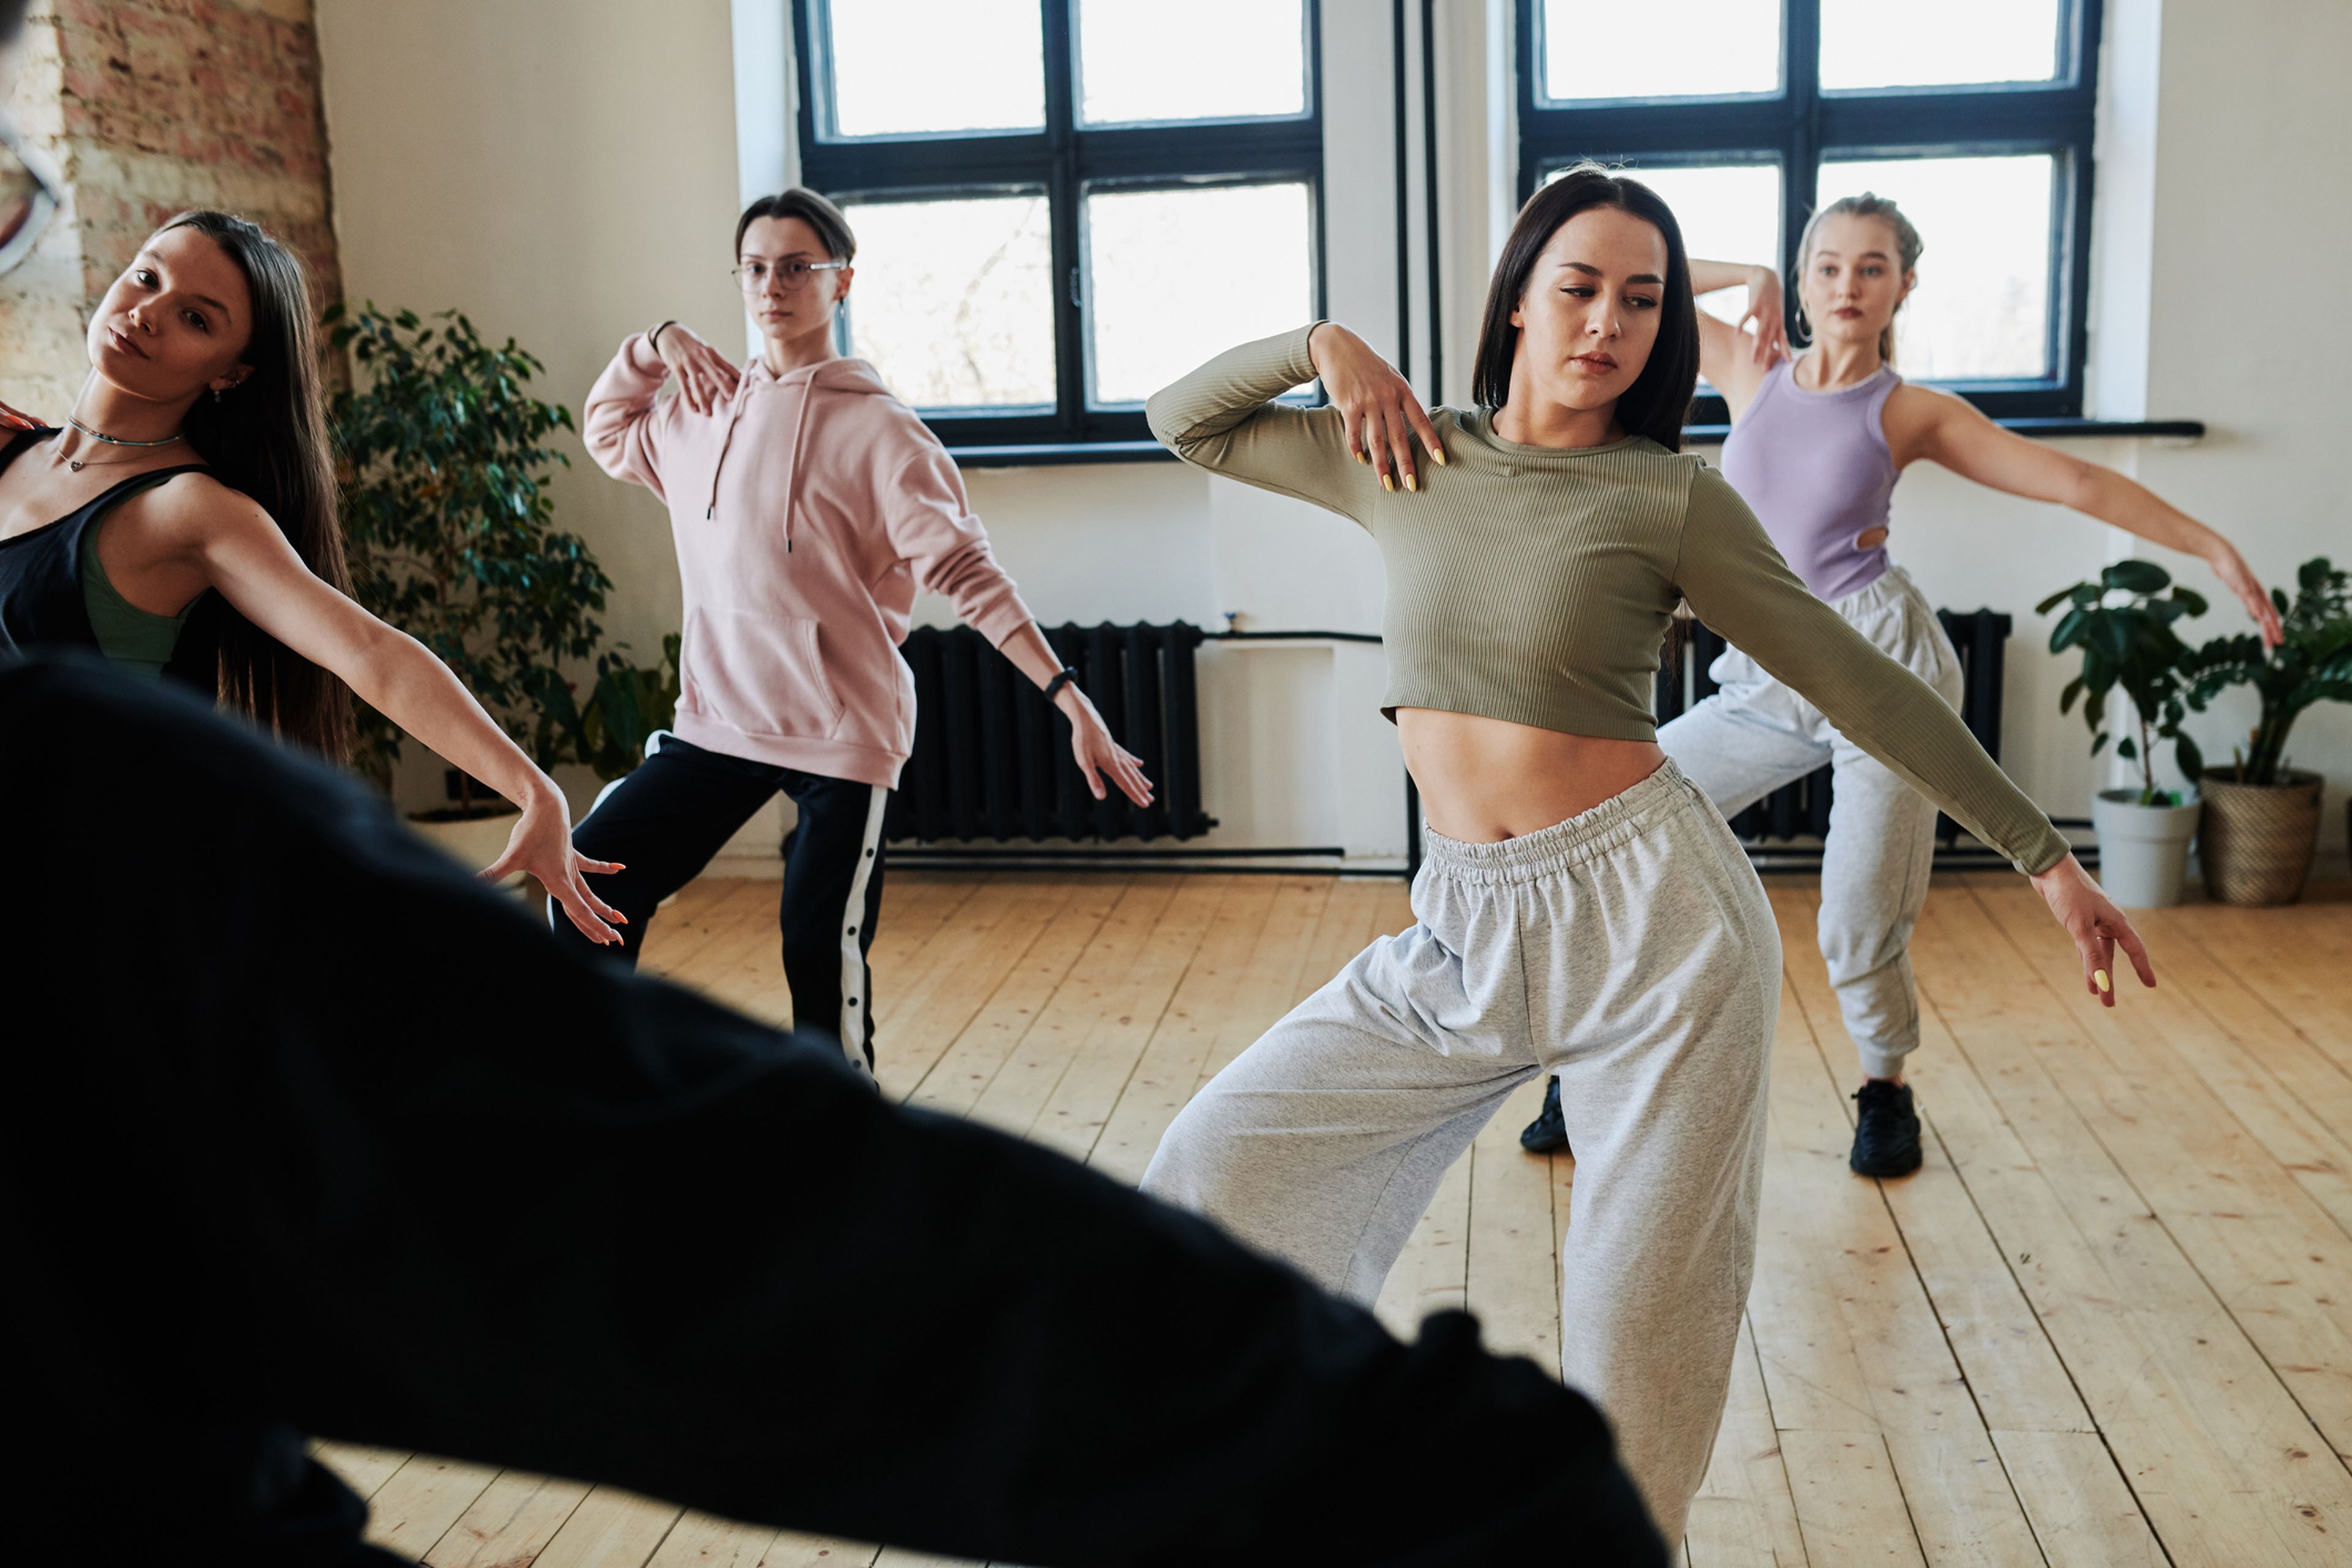 Bailar puede ser una forma efectiva de perder grasa, afirma un estudio